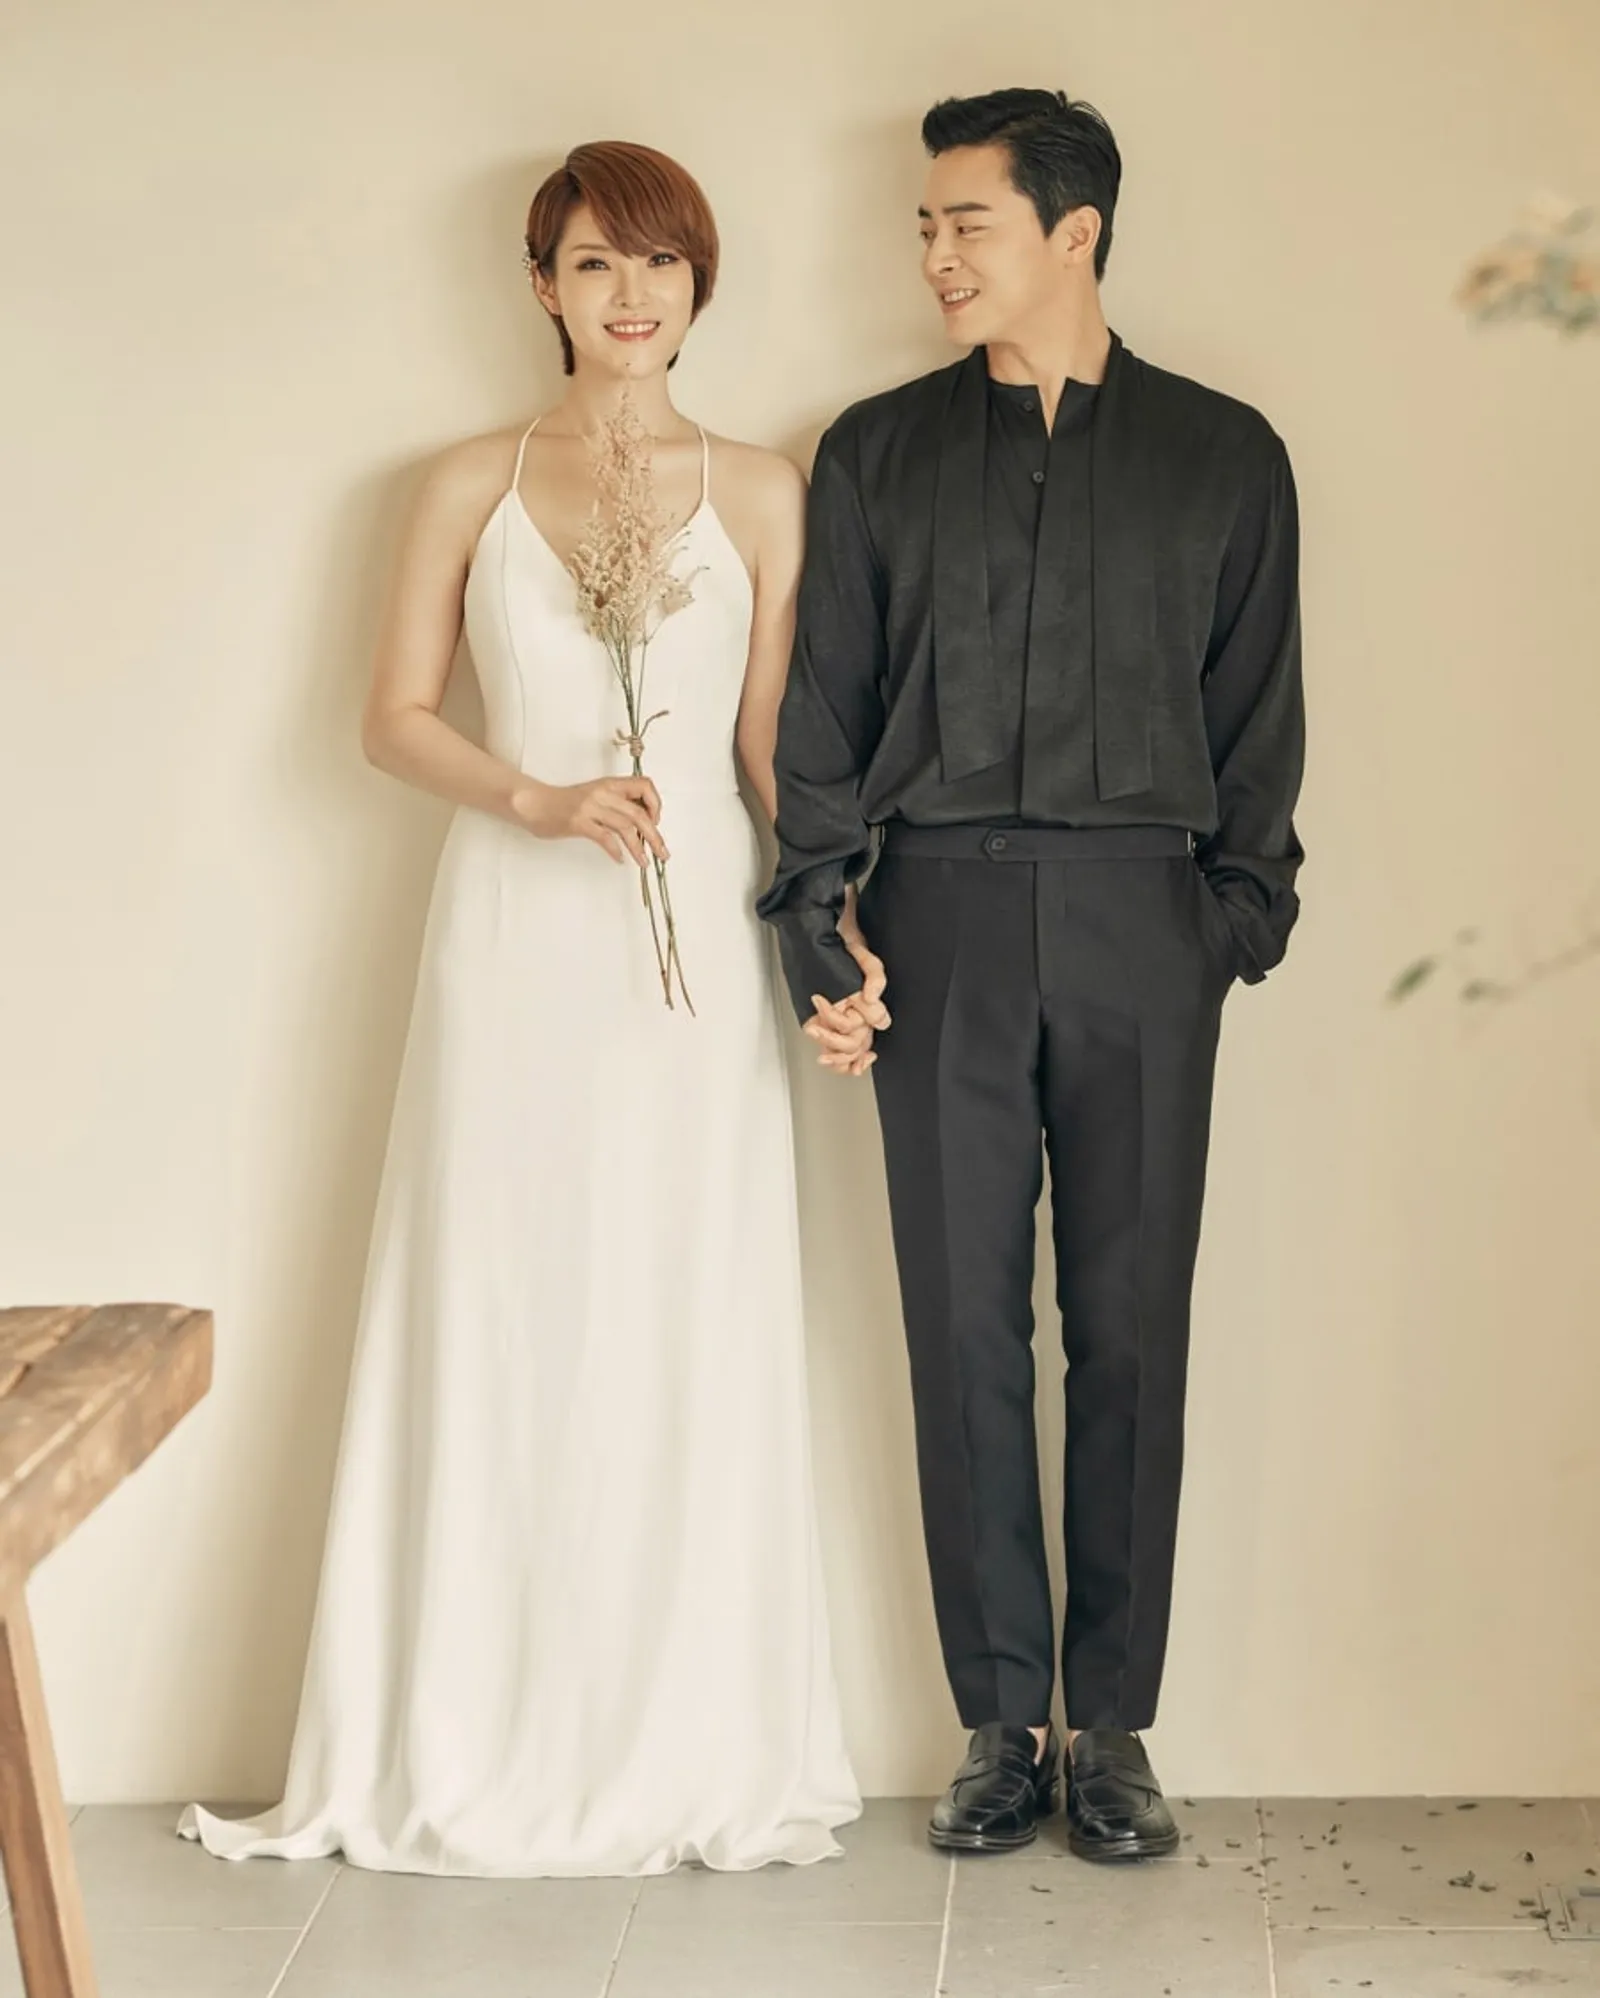 16 Gaya Artis Korea Pakai Gaun Mewah di Hari Pernikahan